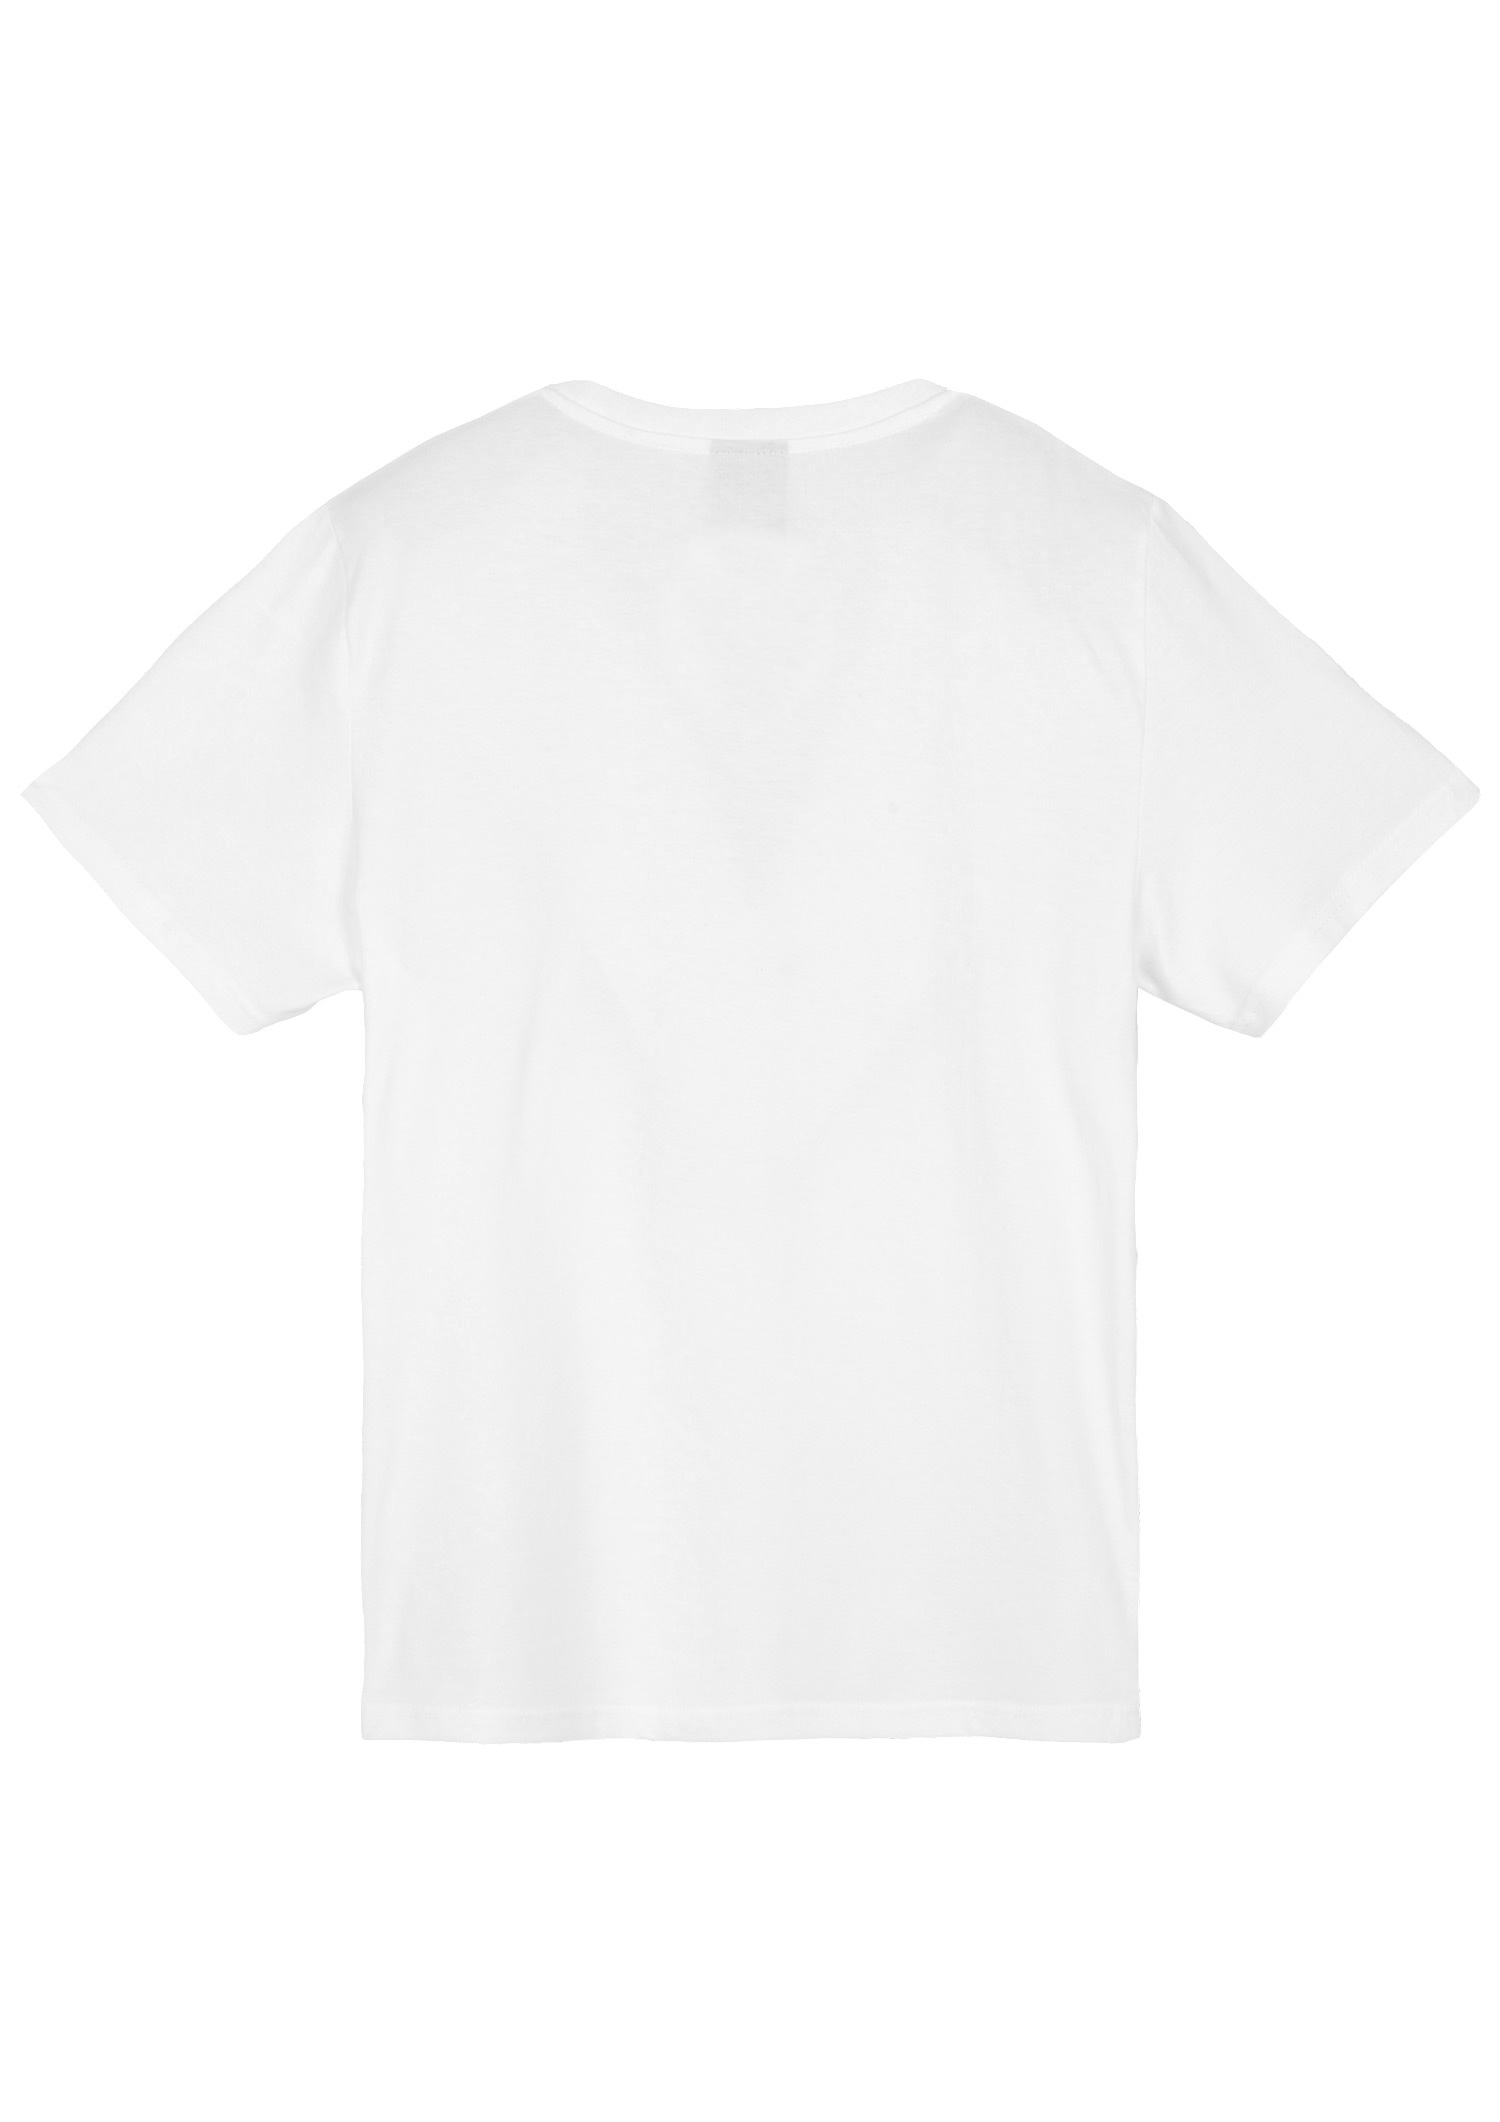  T-Shirt Kinder Aufstieg - weiß